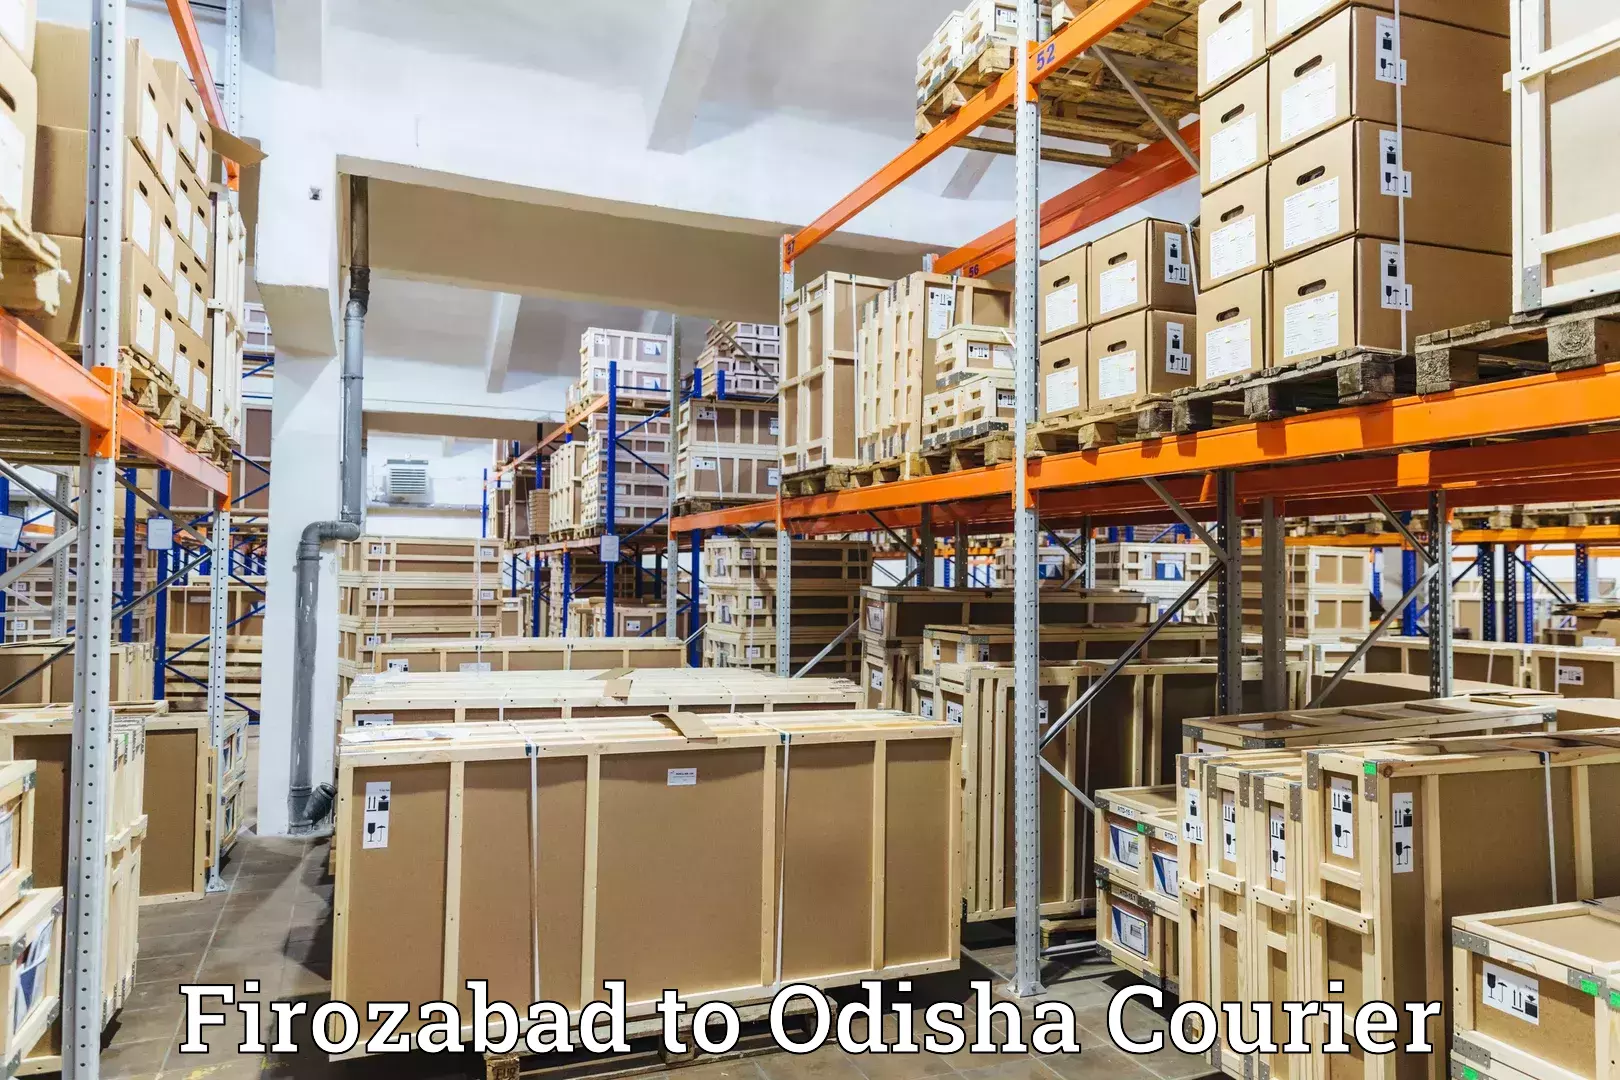 Customer-centric shipping Firozabad to Malkangiri